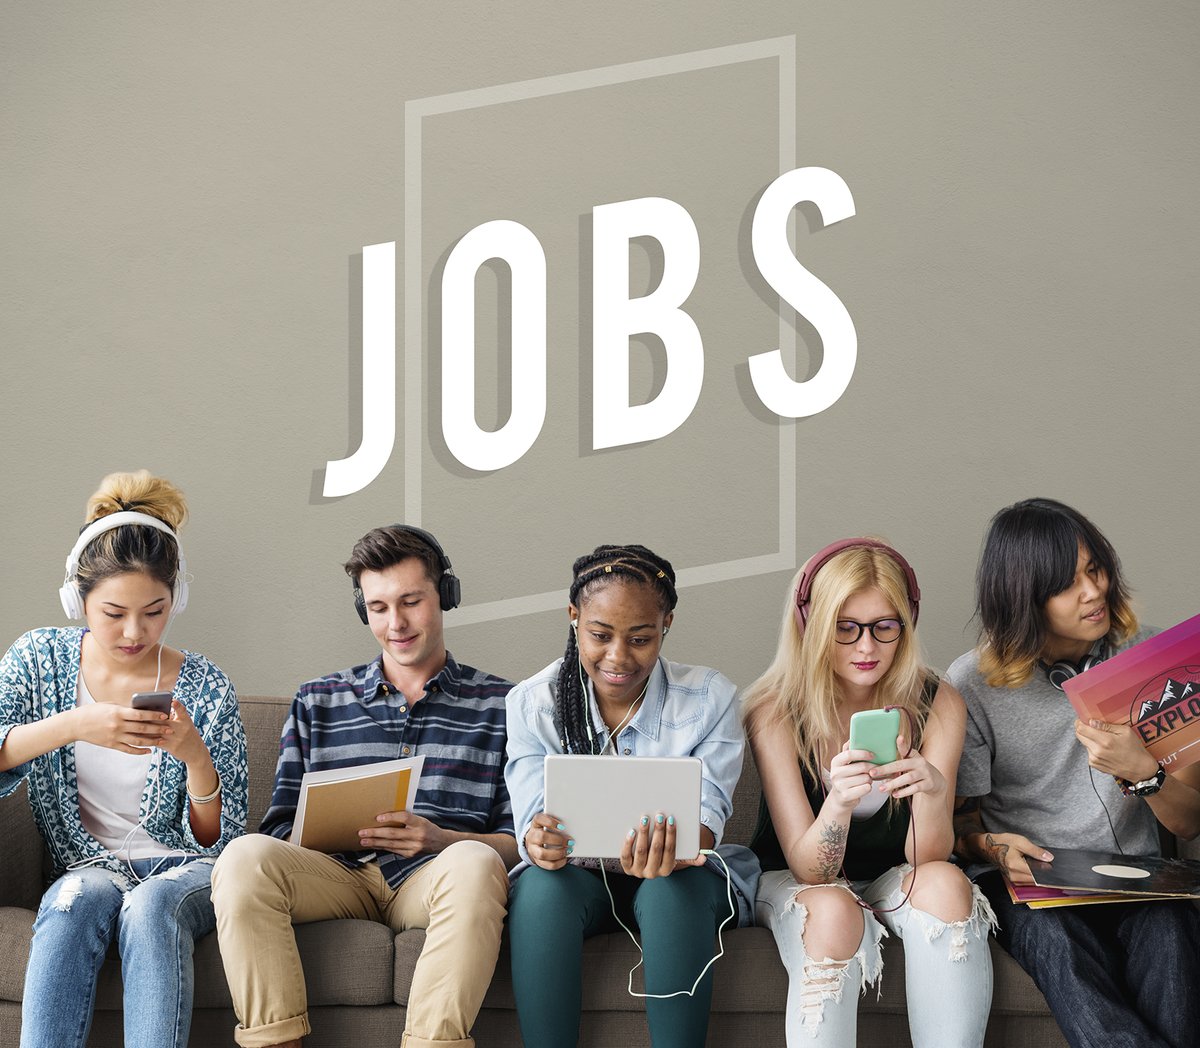 Tu es à la recherche d’un #JobEtudiant dans lequel t’épanouir cet été ❓ Nous avons forcément LE #job qu’il te faut > pulse.ly/at84eccnu4 Prépare ton CV et postule 𝗮𝘃𝗮𝗻𝘁 𝗹𝗲 𝟵 𝗮𝘃𝗿𝗶𝗹 𝟮𝟬𝟮𝟯... et si le job n’est pas pour toi, parle-en à tes amis 😉